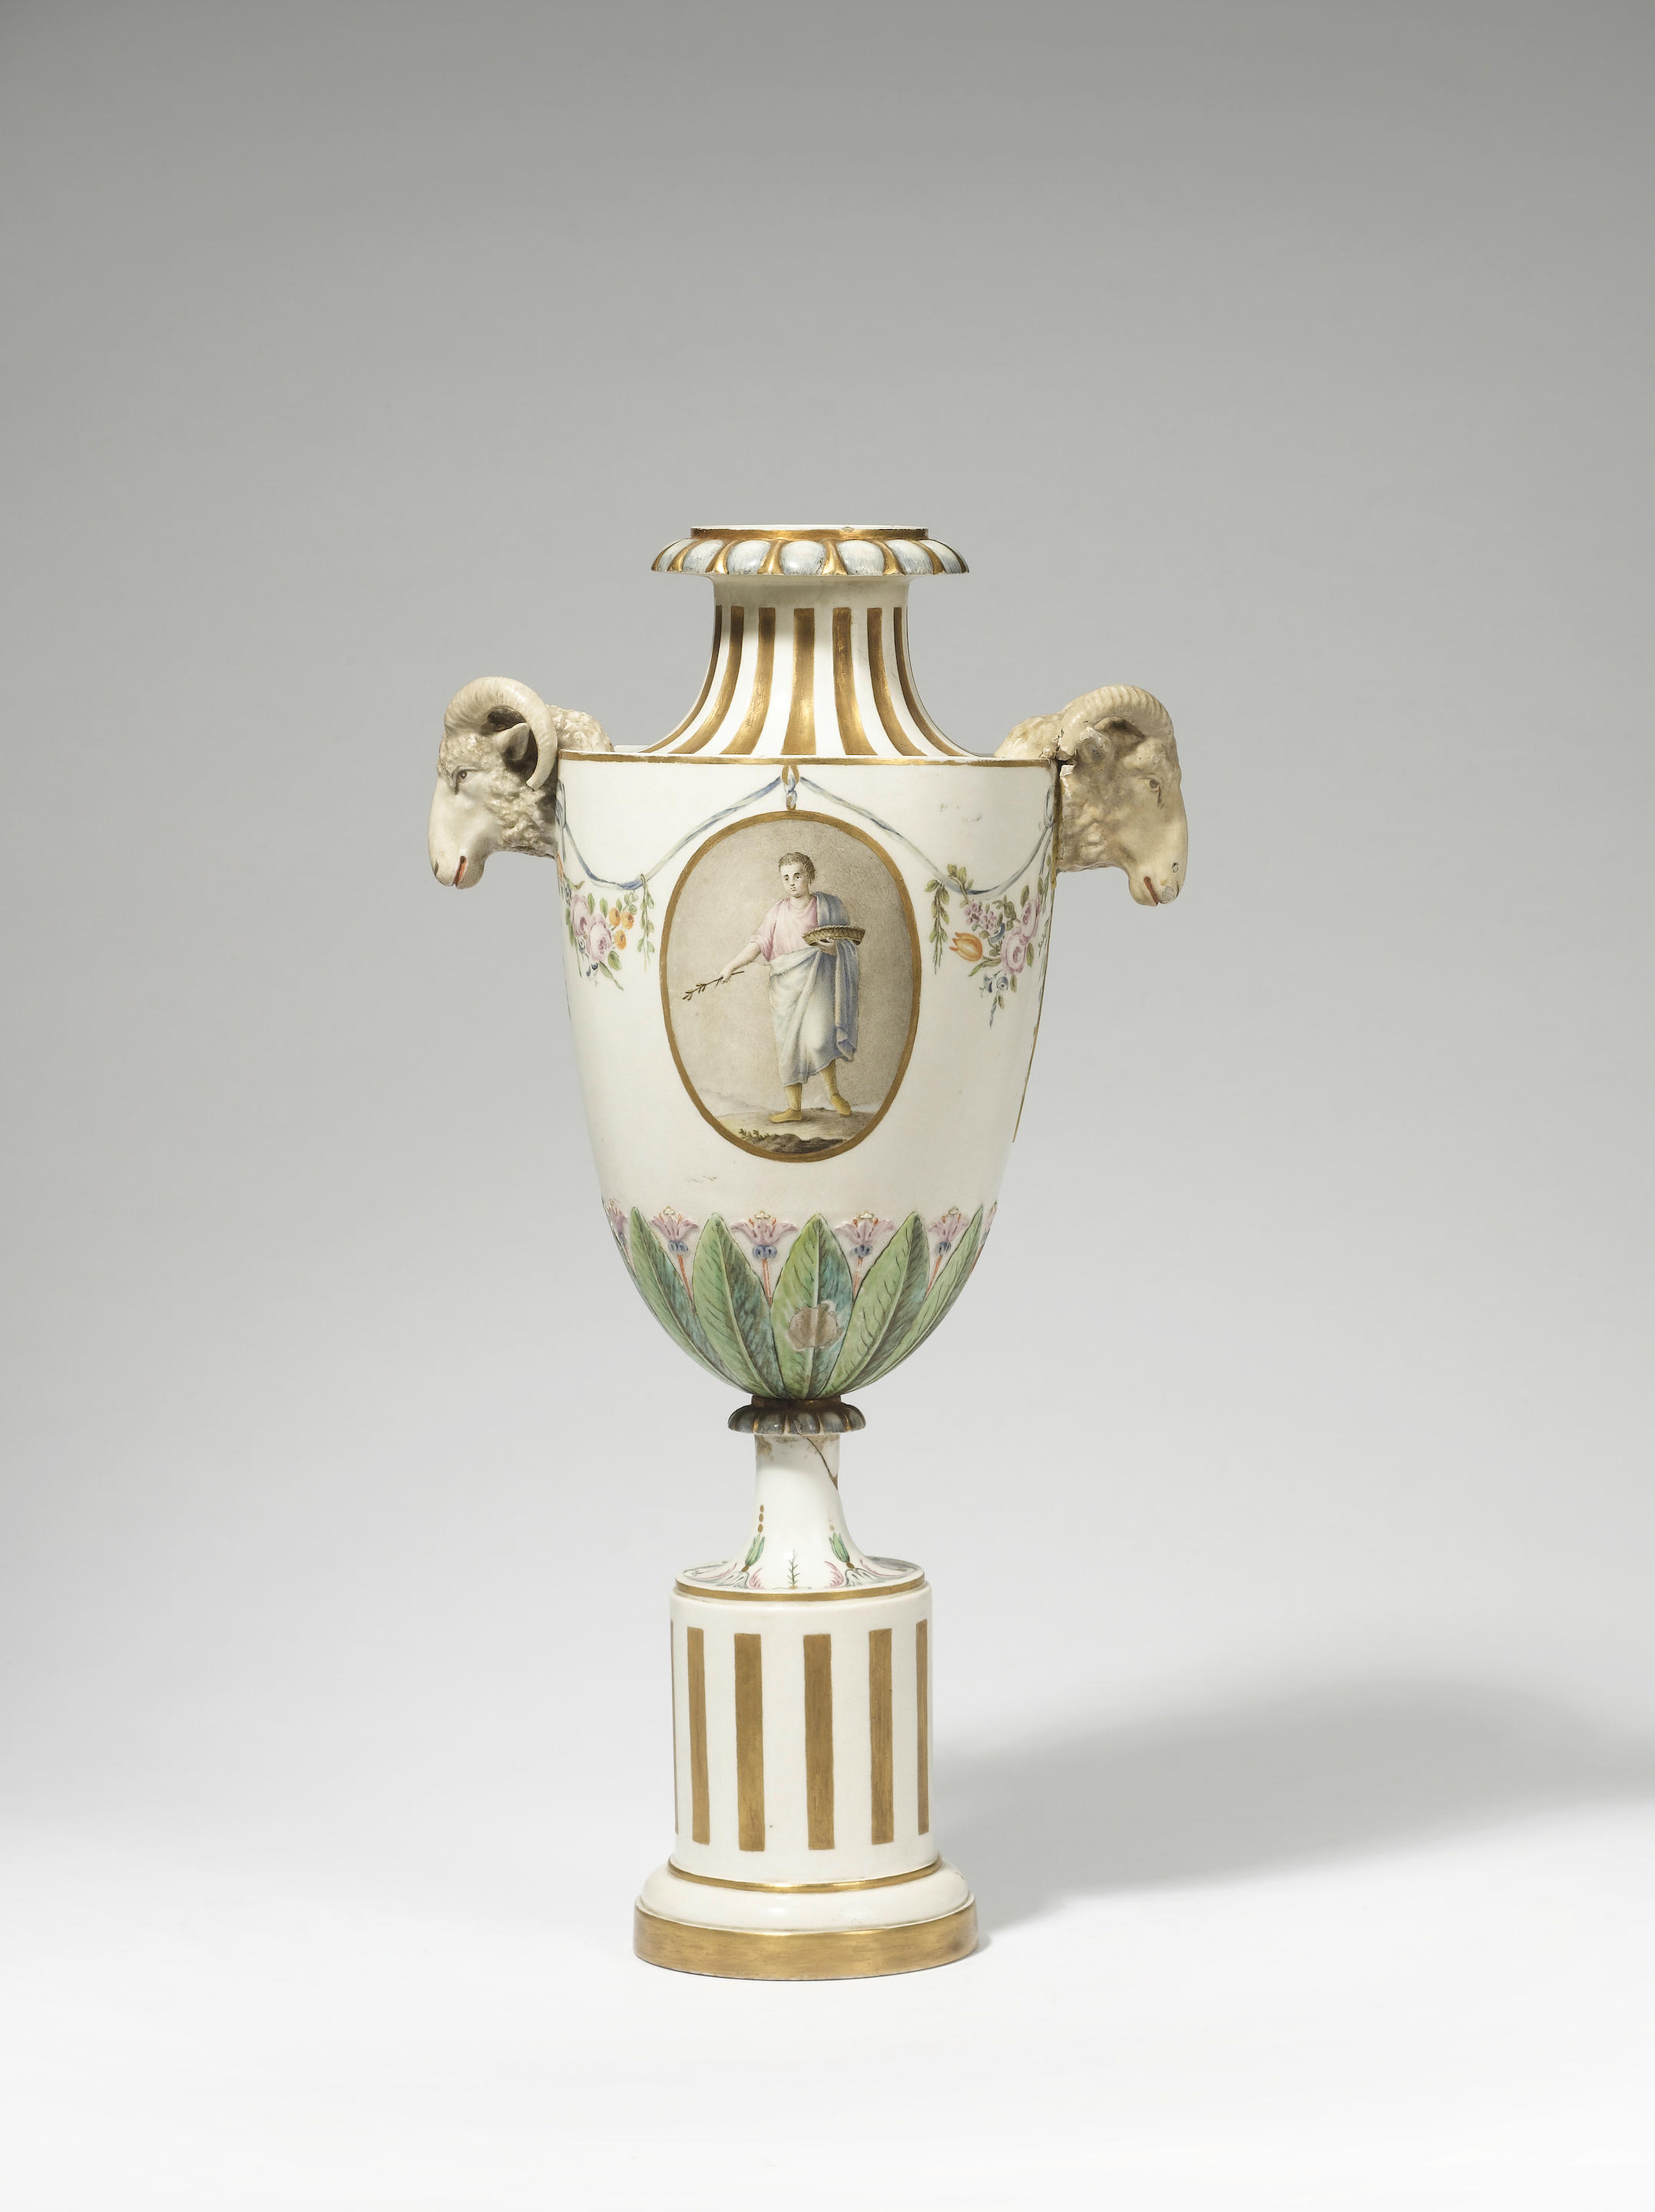 An impressive Buen Retiro porcelain vase